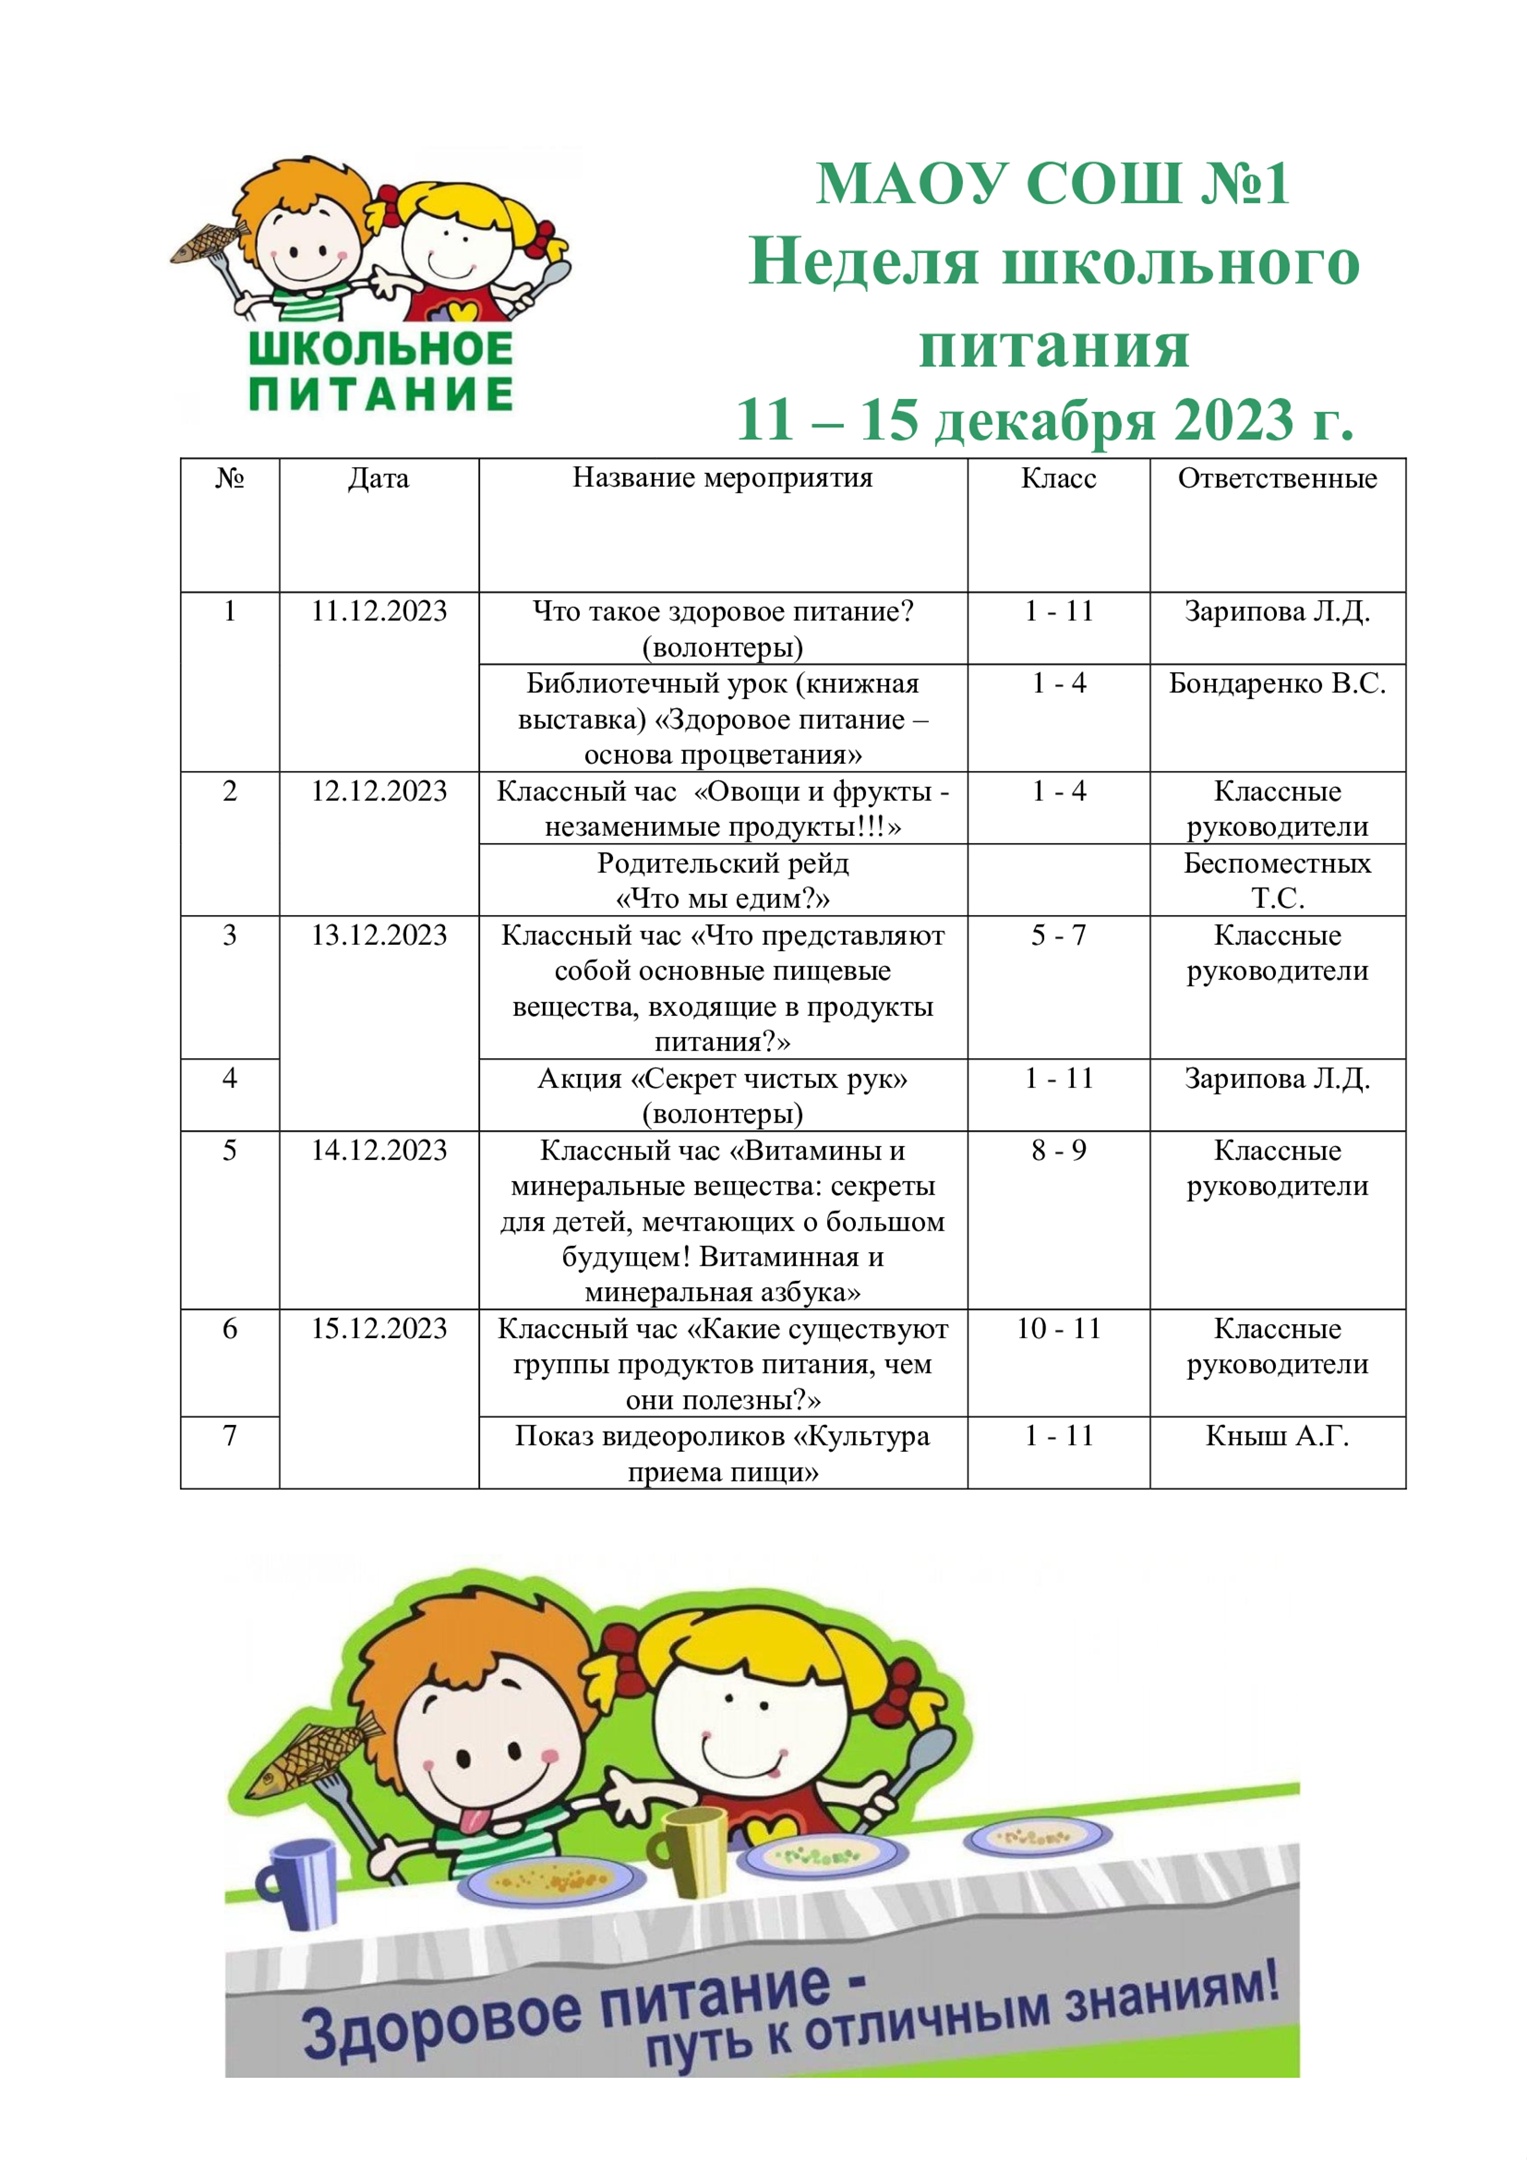 С 11 по 15 декабря 2023 года в МАОУ СОШ №1 проводится &amp;quot;Неделя школьного питания&amp;quot;.